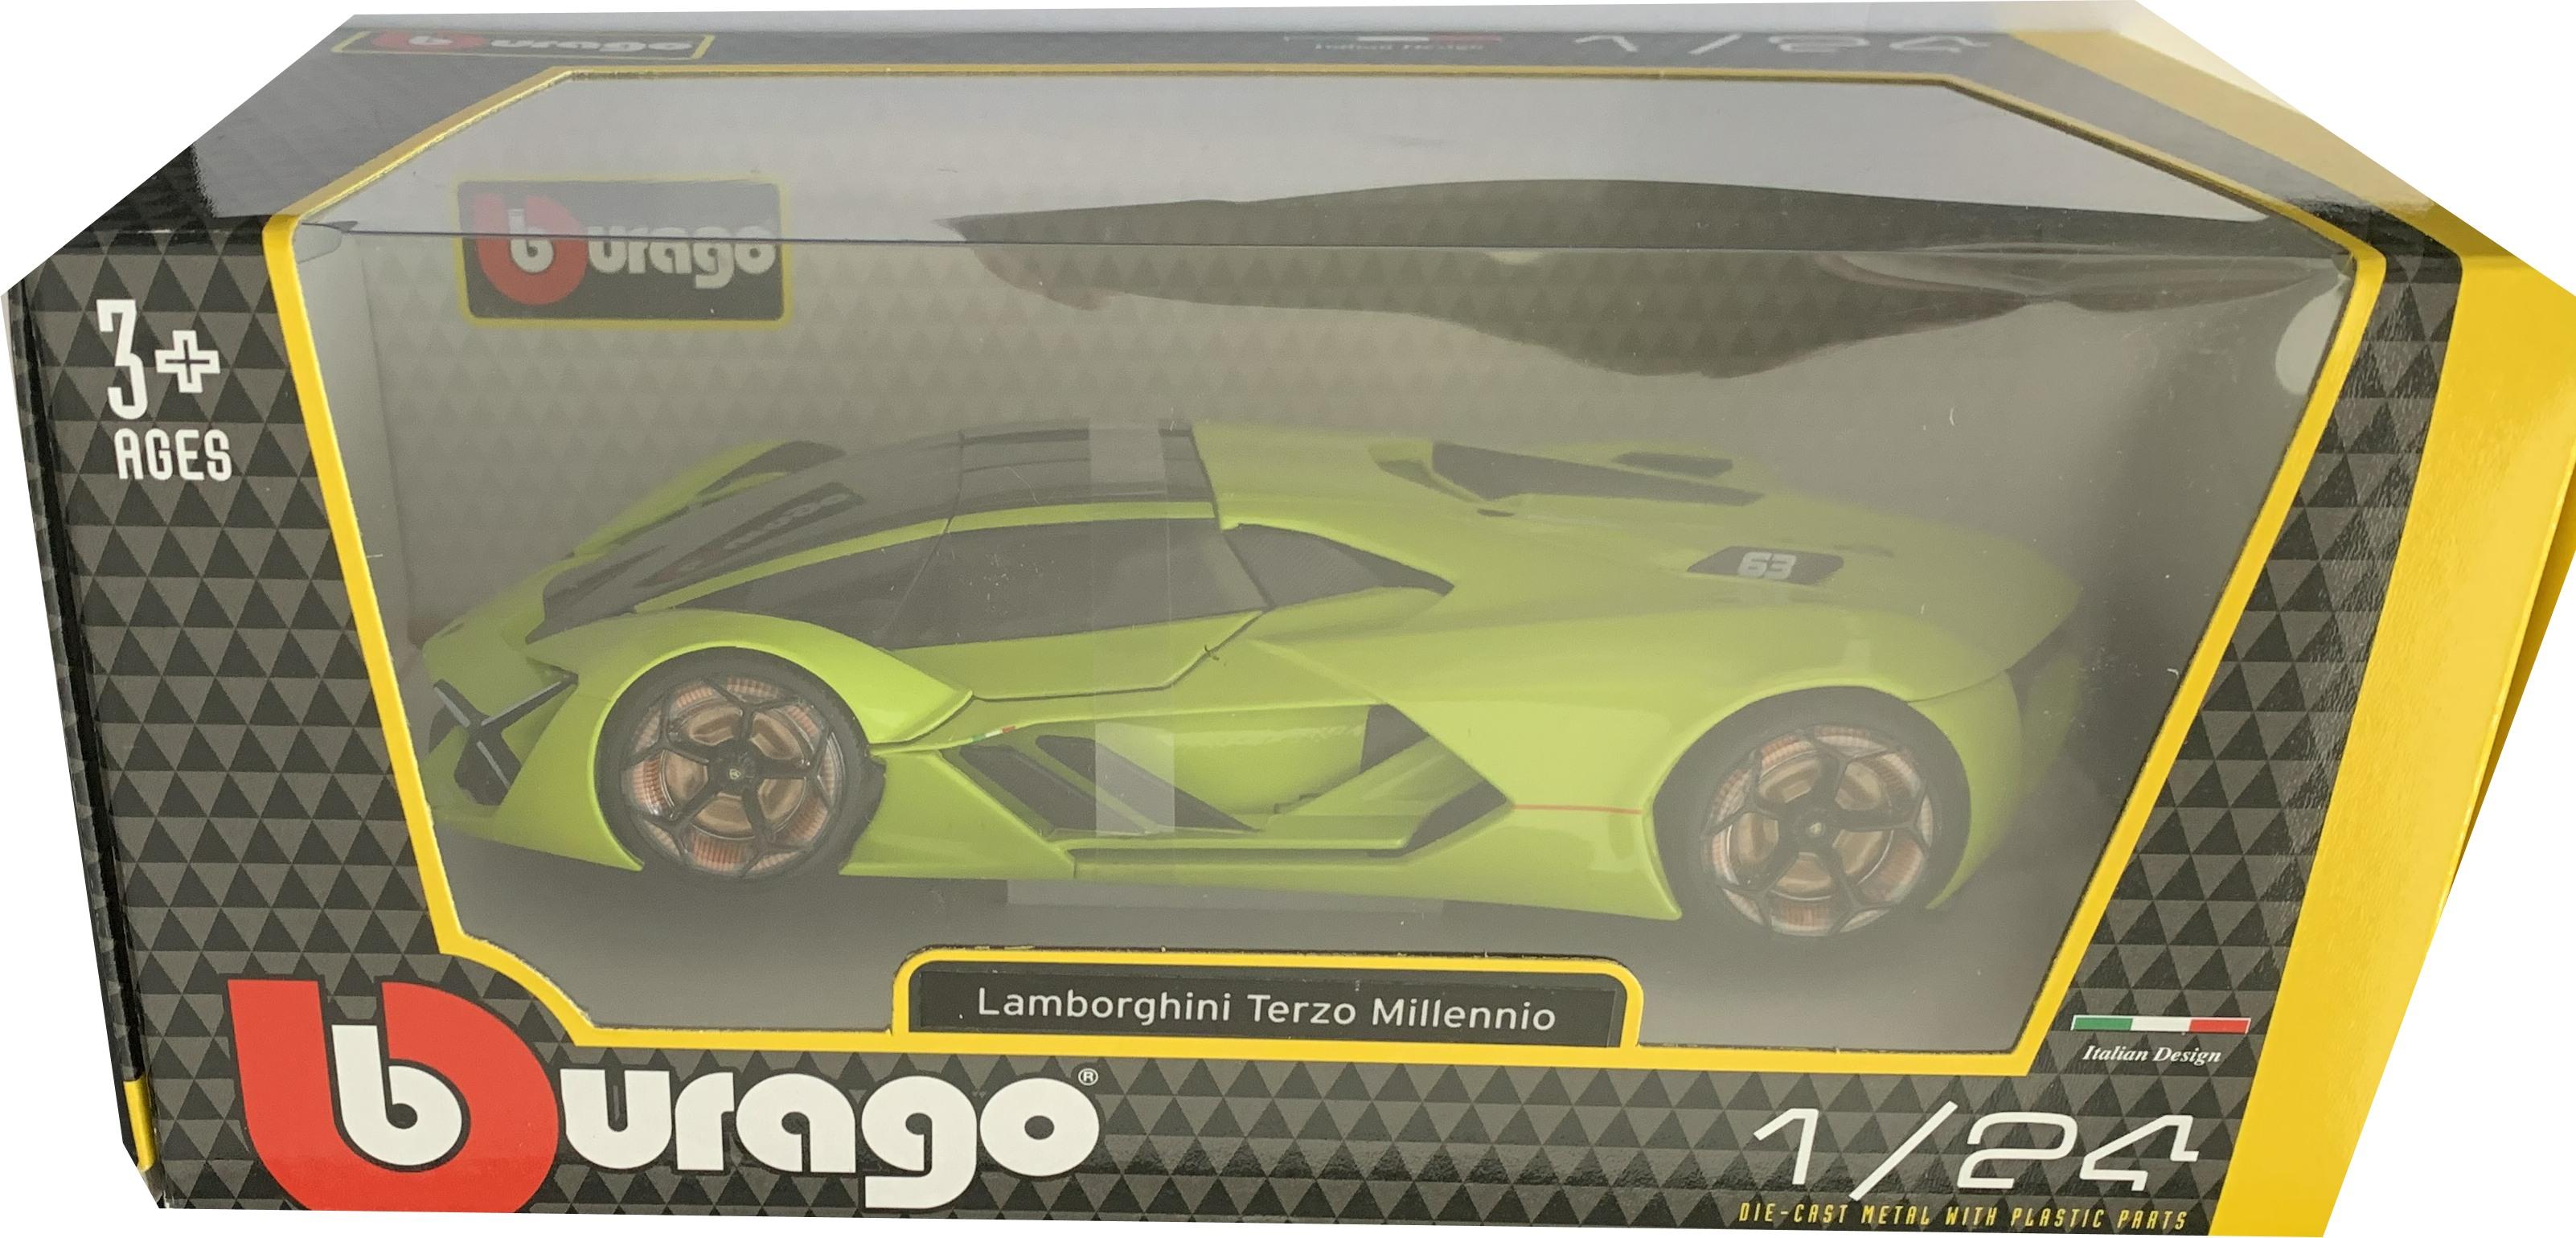 Lamborghini Terzo Millennio in lemon green 1:24 scale model from Bburago